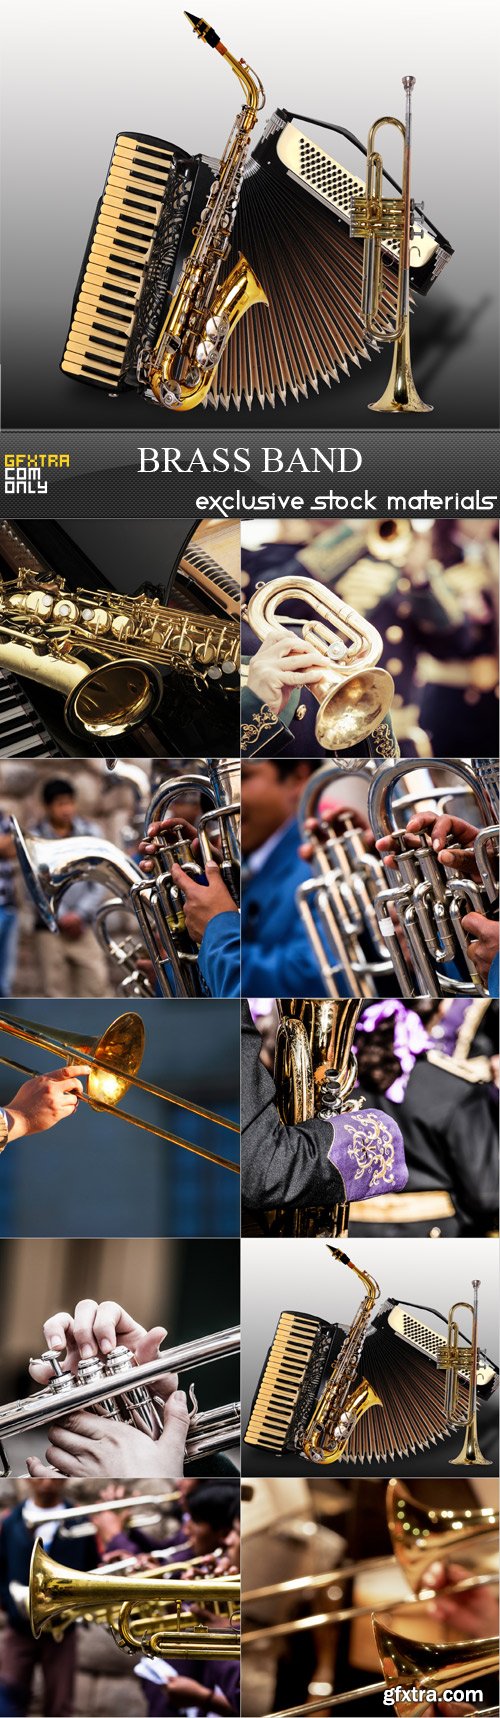 Brass Band 10xJPG